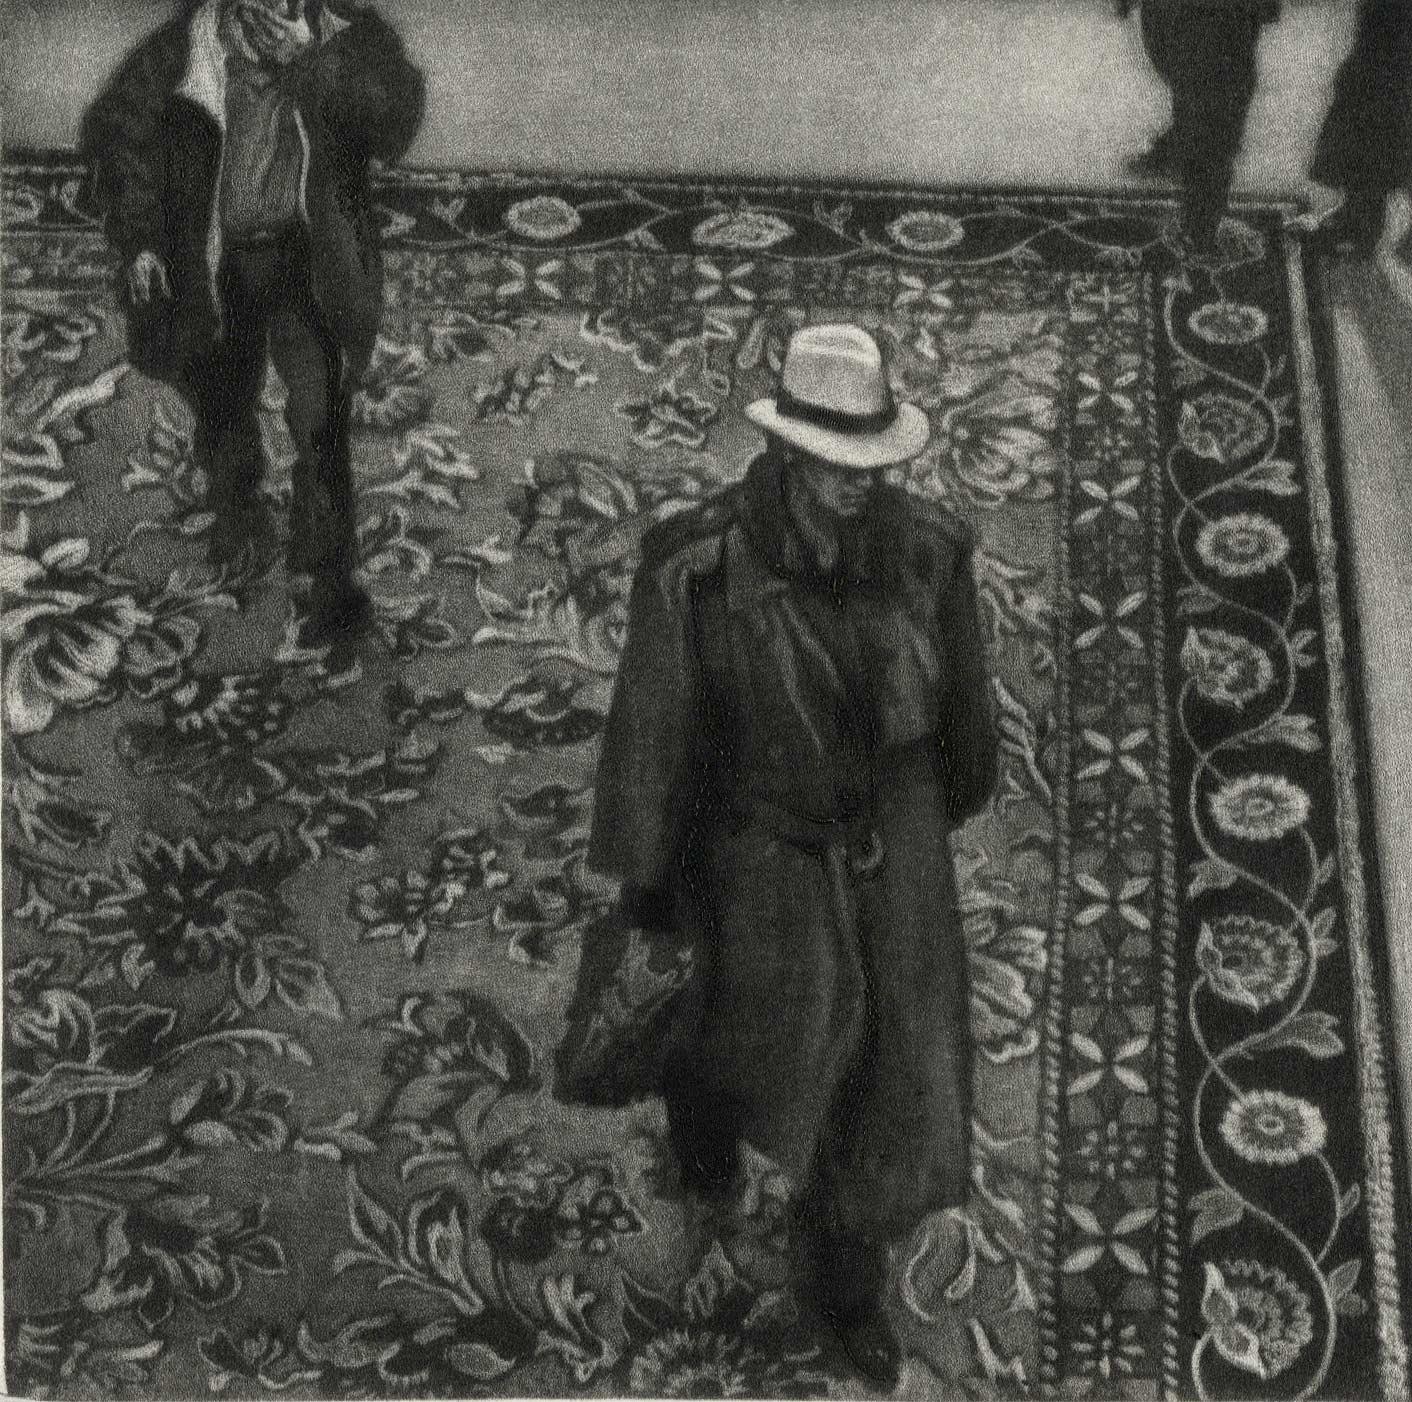 10 P.M. Dallas (Man in hat walks across an Oriental carpet in Dallas hotel)